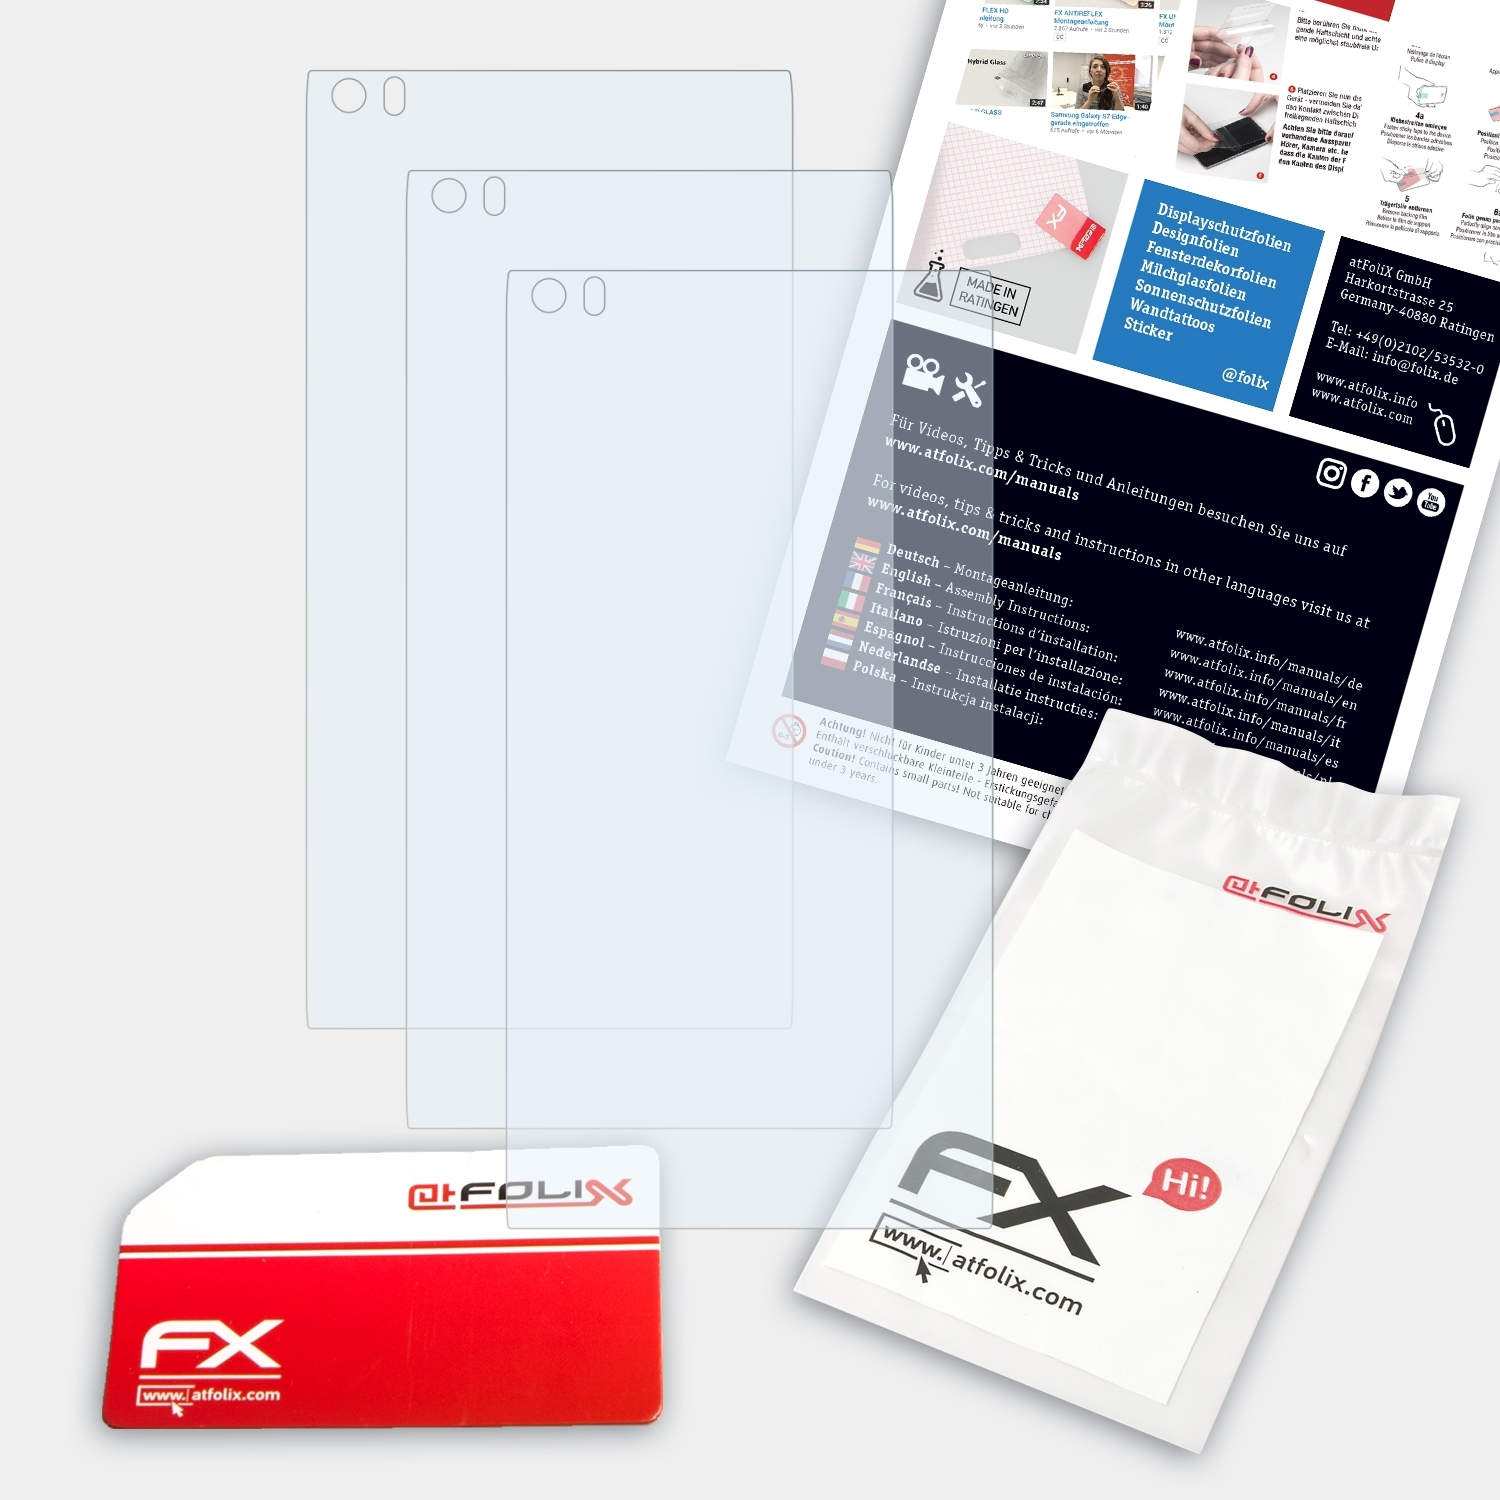 Displayschutz(für 3x LG V20) FX-Clear ATFOLIX